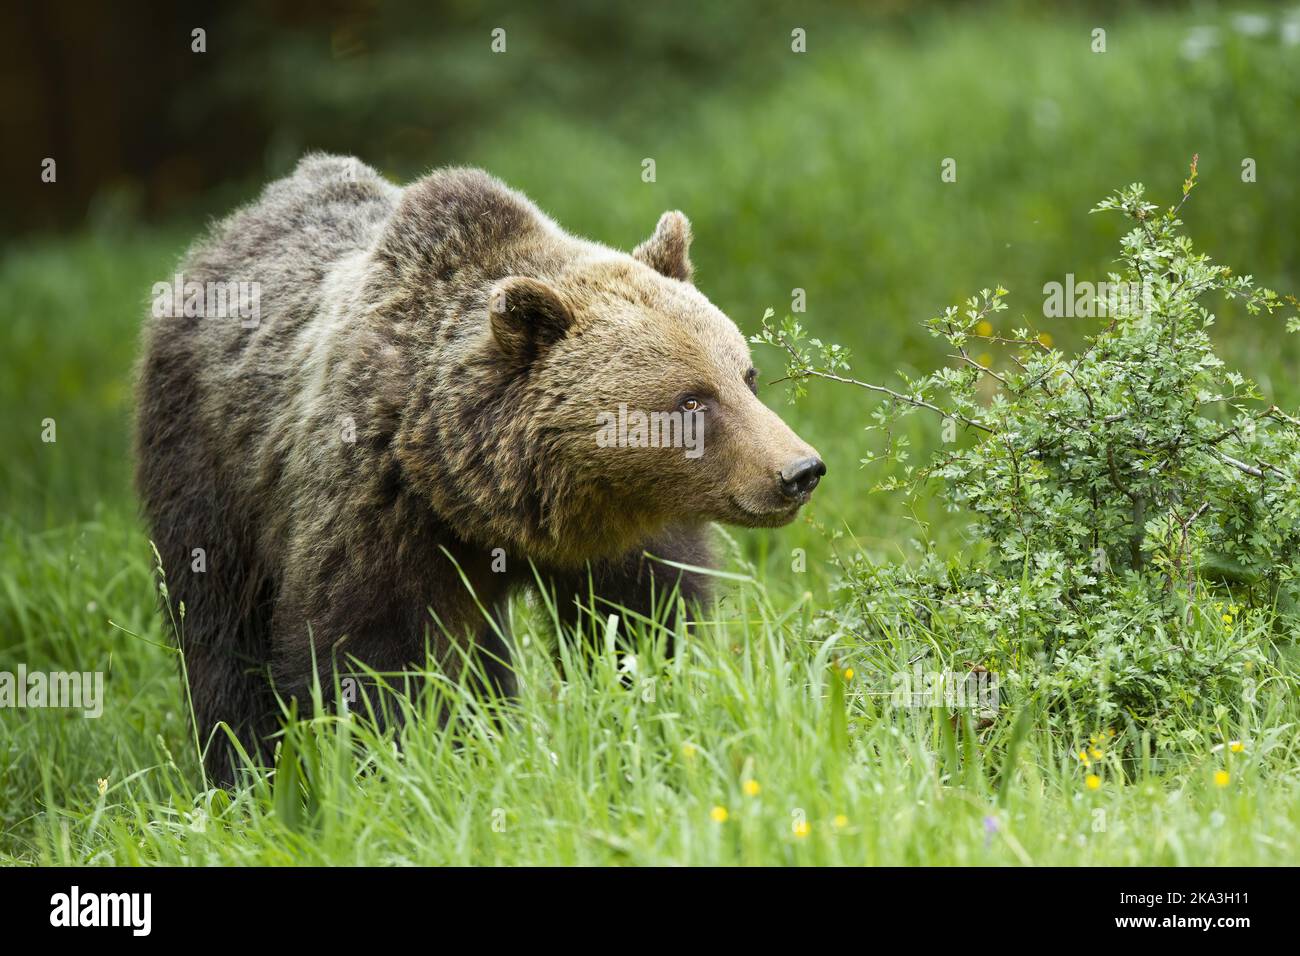 Gran oso marrón que camina sobre la hierba en la naturaleza del verano Foto de stock